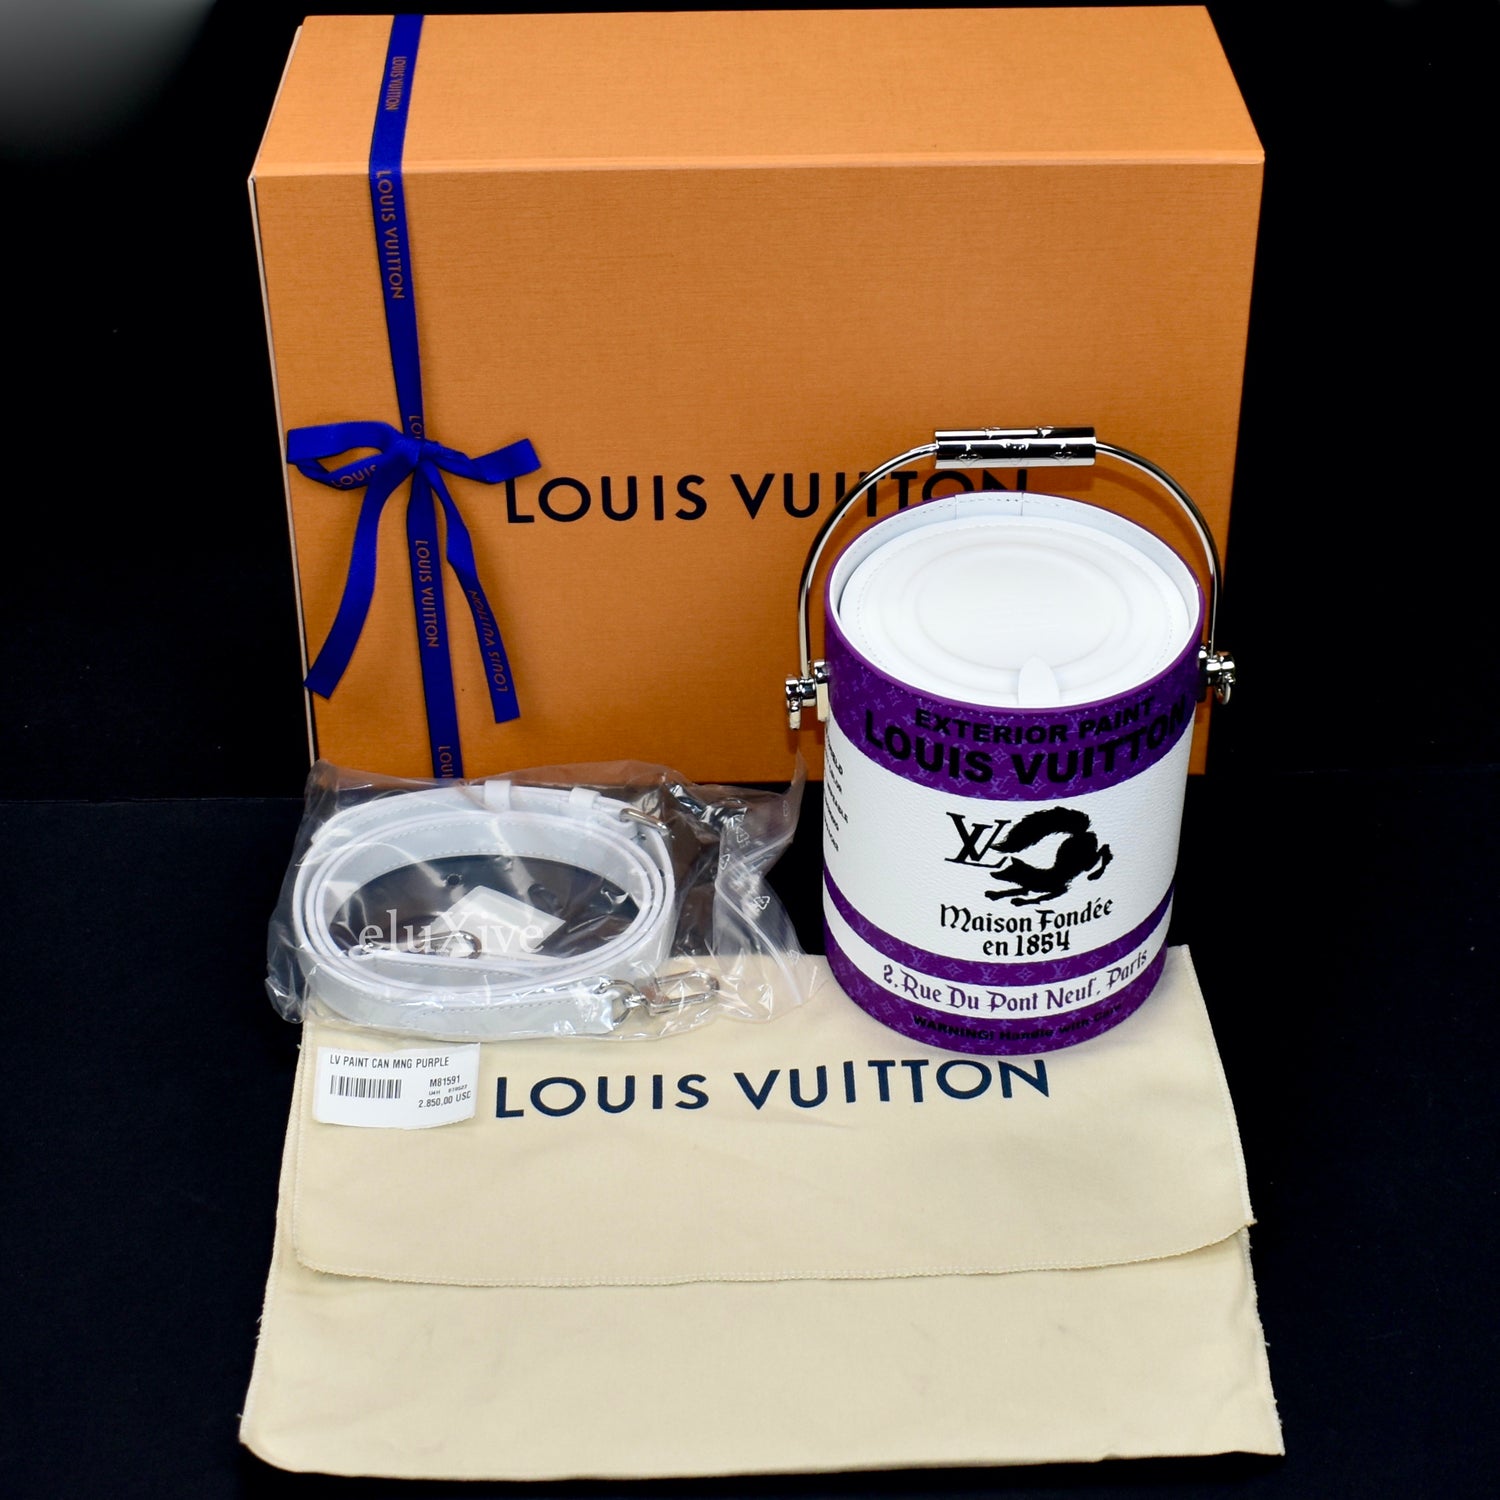 Gấu Louis Vuitton